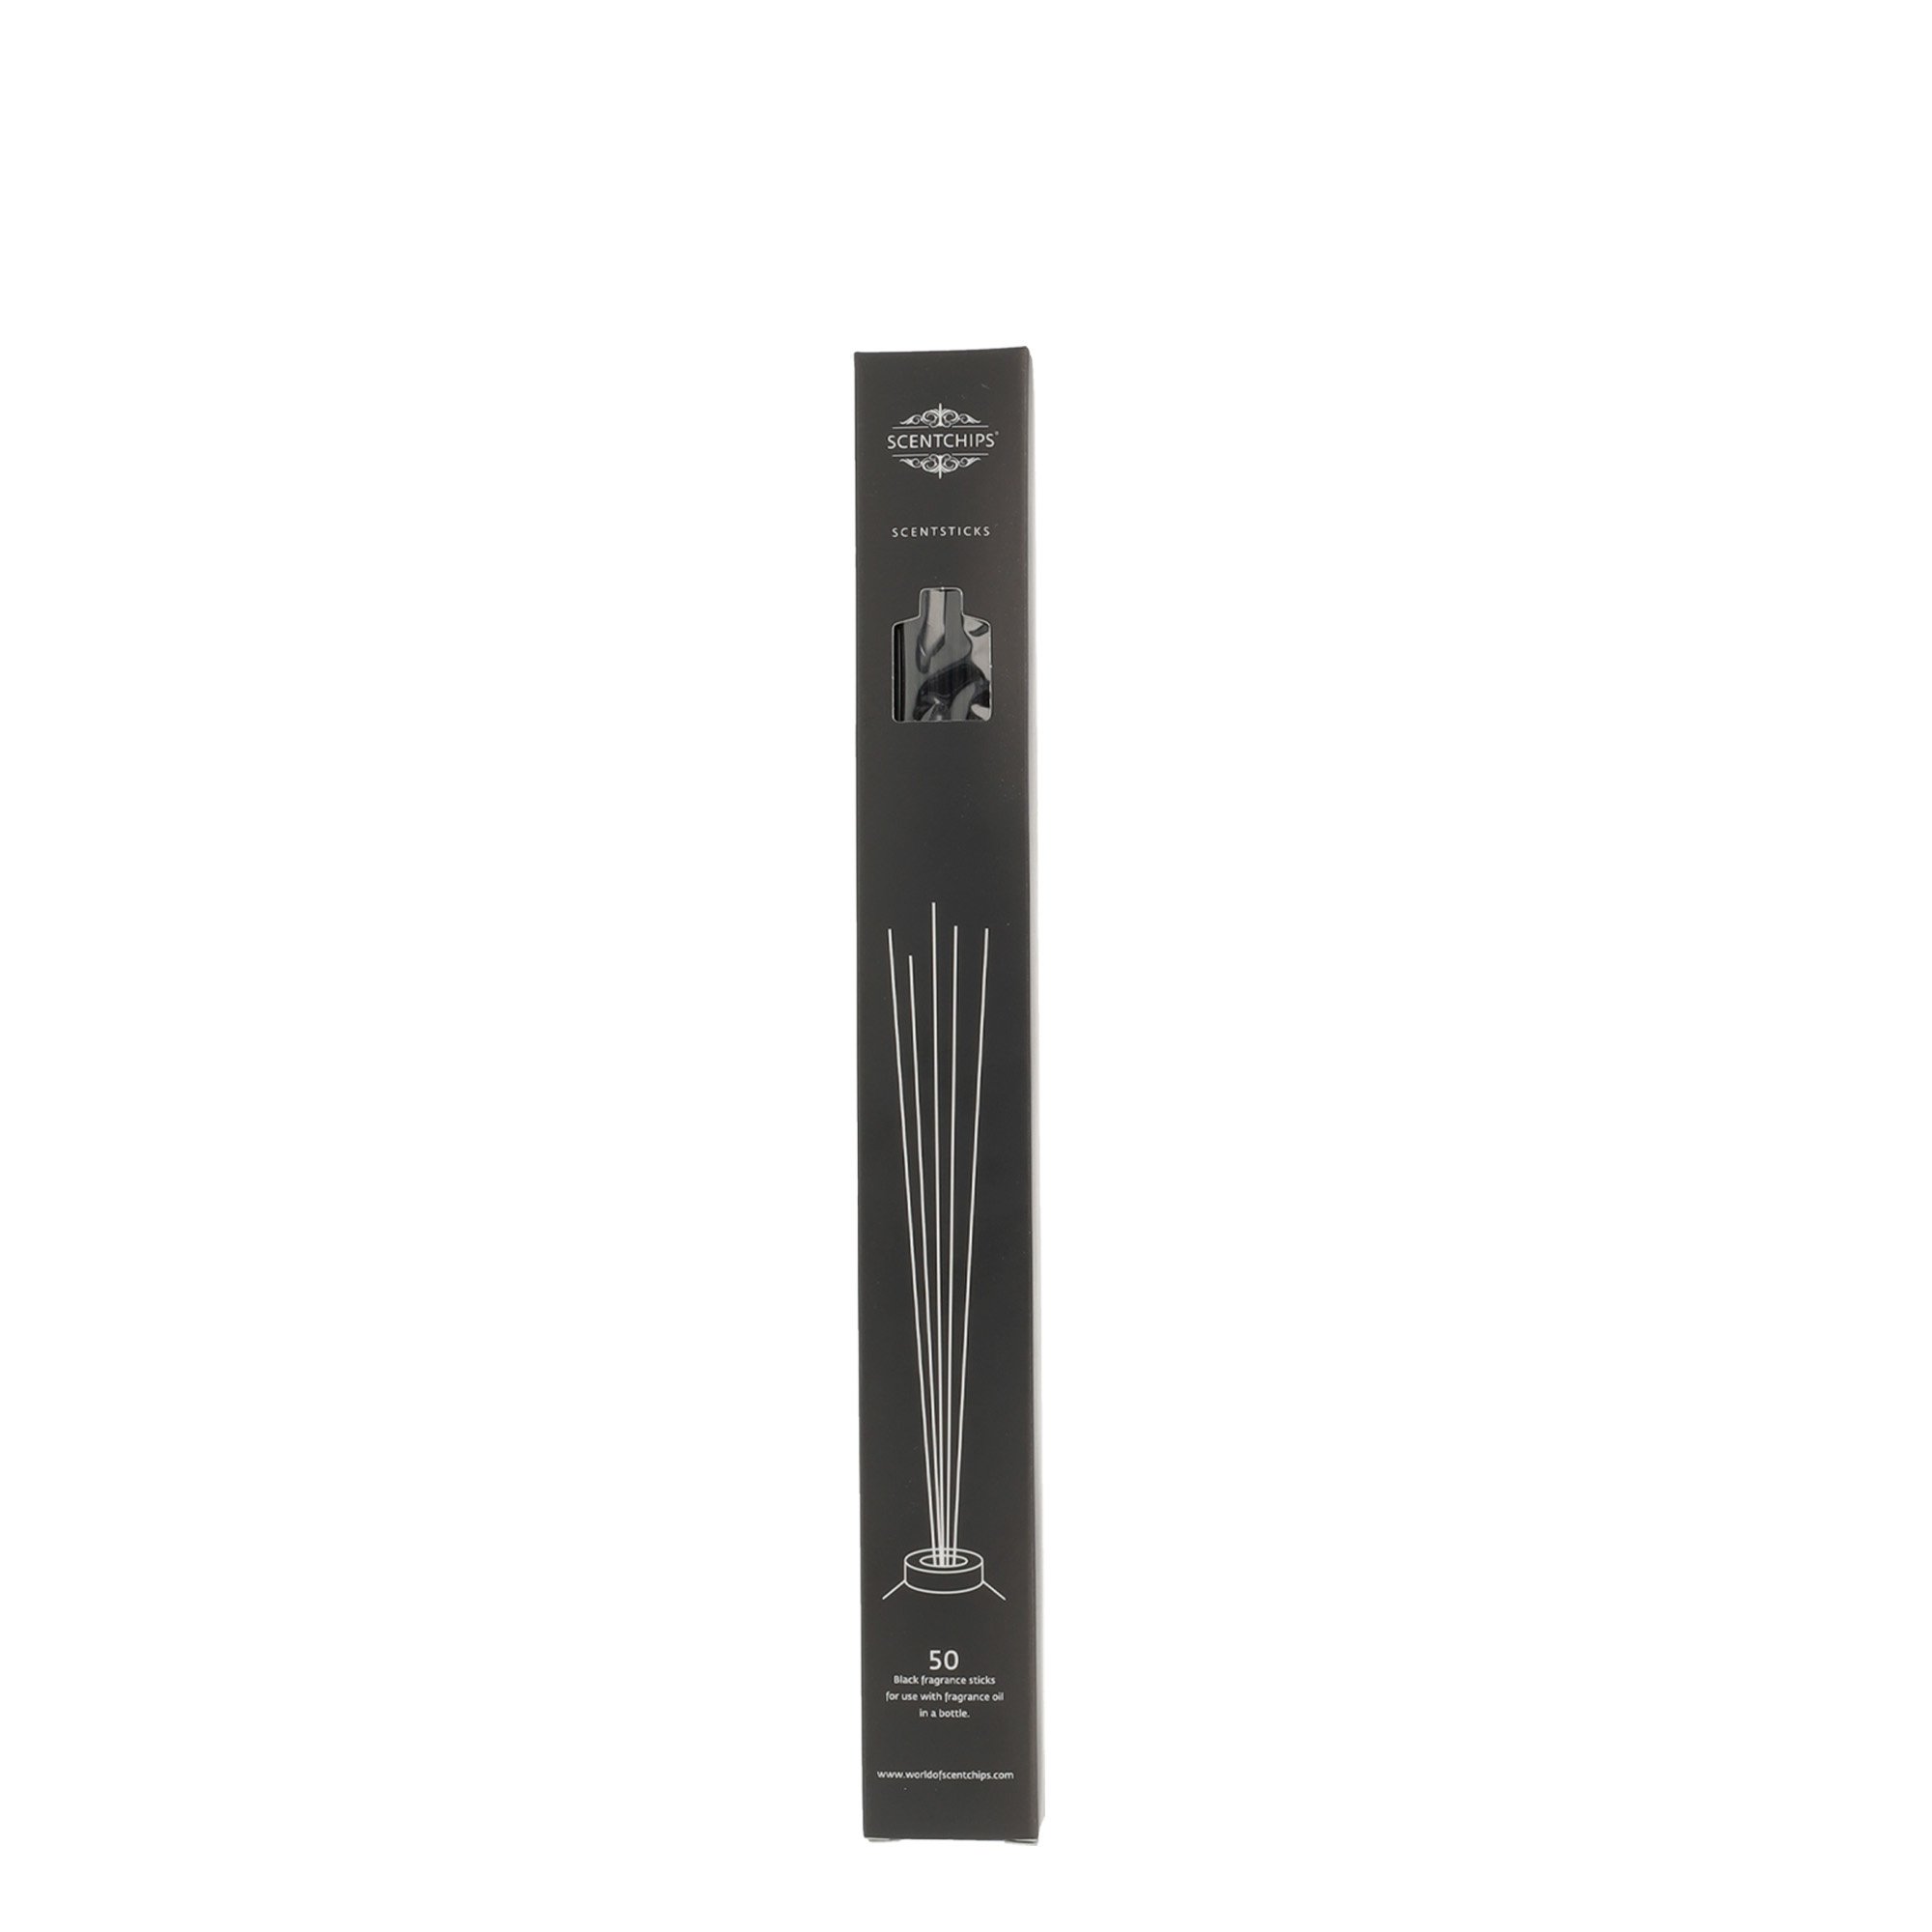 Scentchips® Geurstokjes zwart 3 mm x 30 cm lengte, 50 stuks in doosje